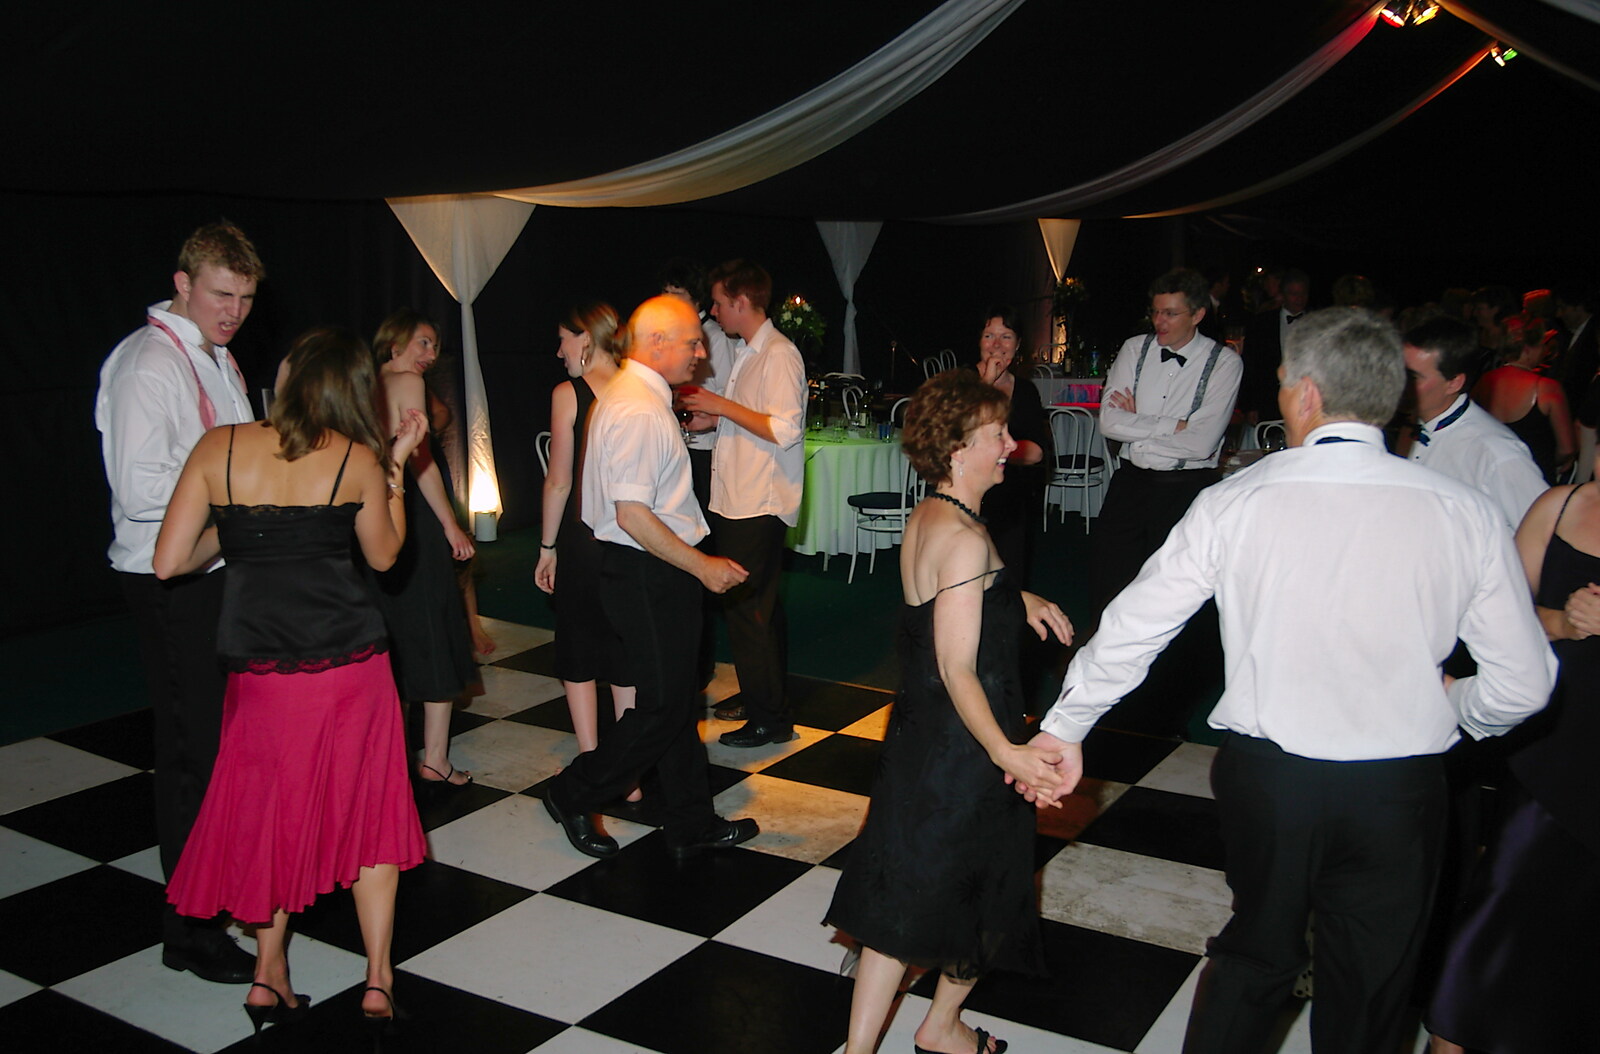 More wedding dancing from The BBs Play Bressingham, Norfolk - 3rd September 2005